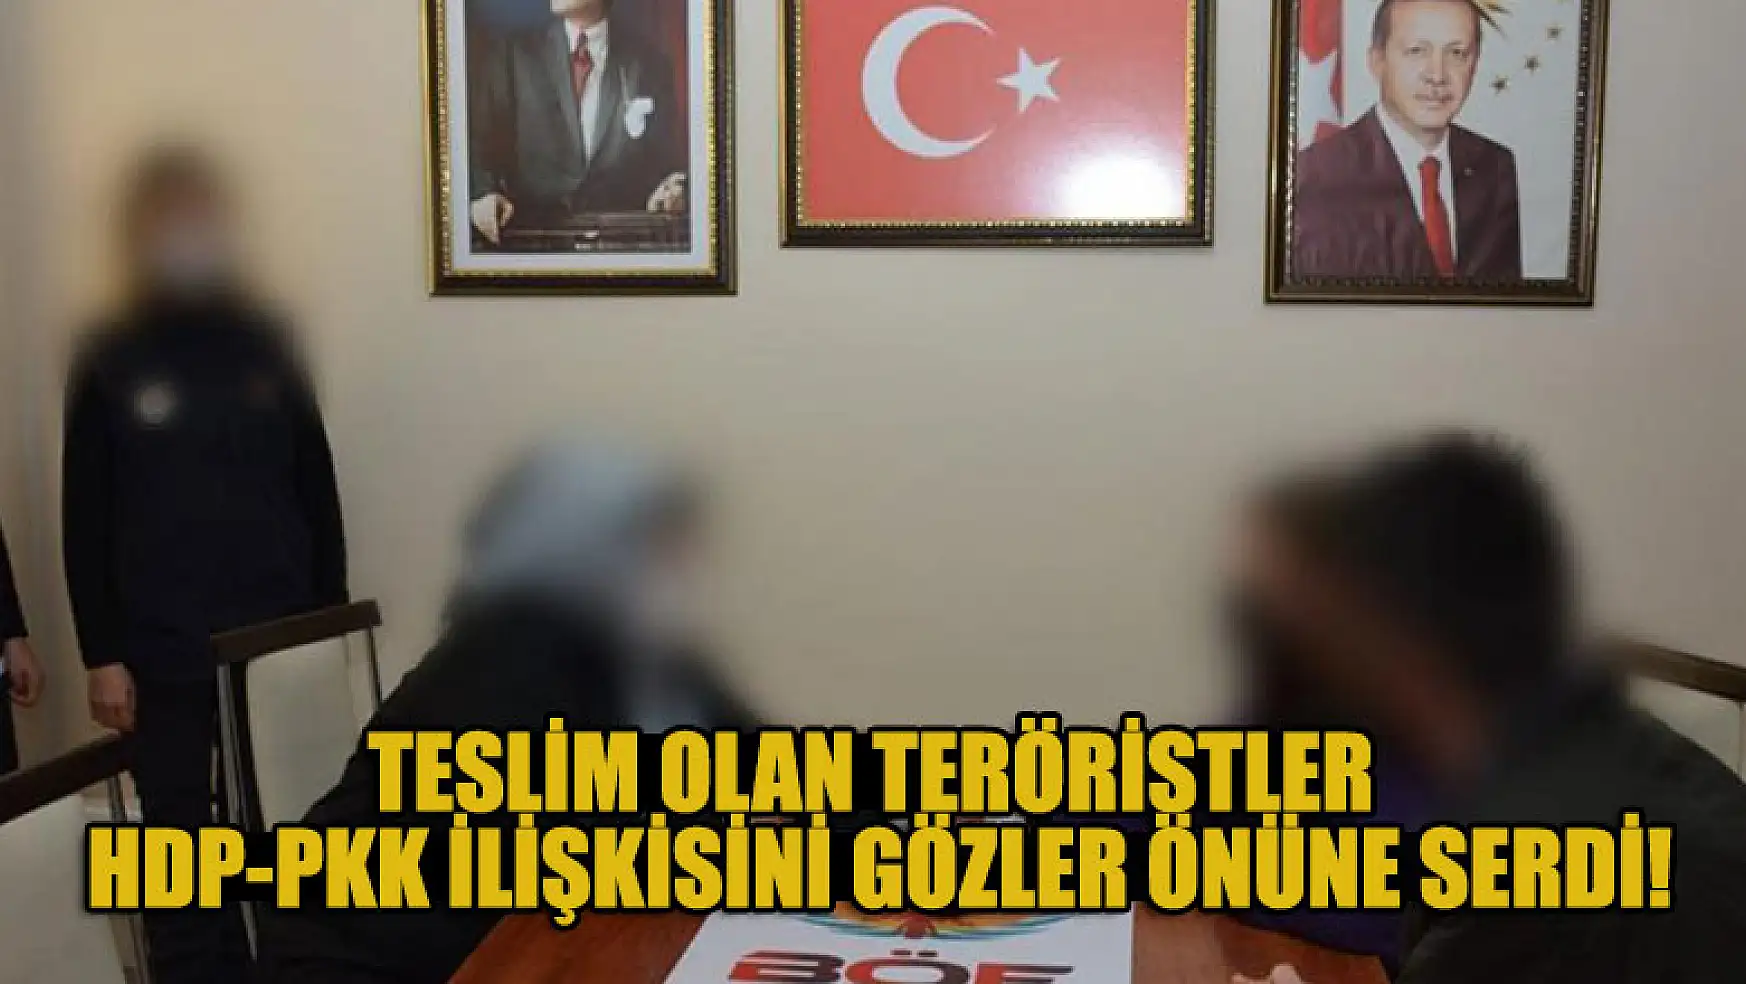 Teslim olan teröristler, HDP-PKK ilişkisini gözler önüne serdi!